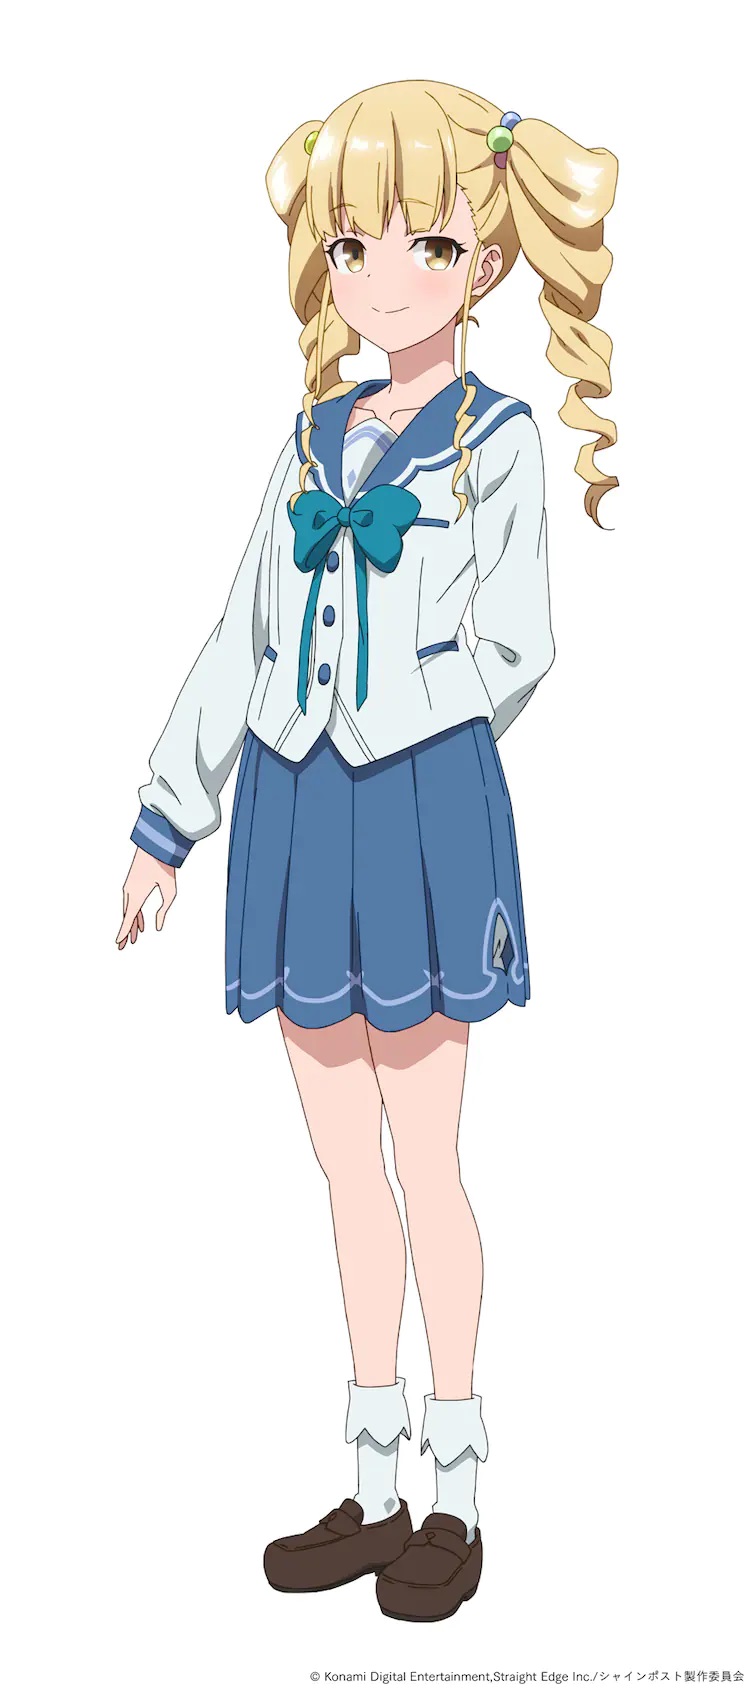 Un escenario de personaje de Homare Torawatari del próximo anime SHINE POST TV.  Homare es una chica de secundaria con cabello rubio en dos colas y ojos amarillos.  Viste un uniforme escolar y sonríe recatadamente mientras posa con una mano detrás de la espalda.